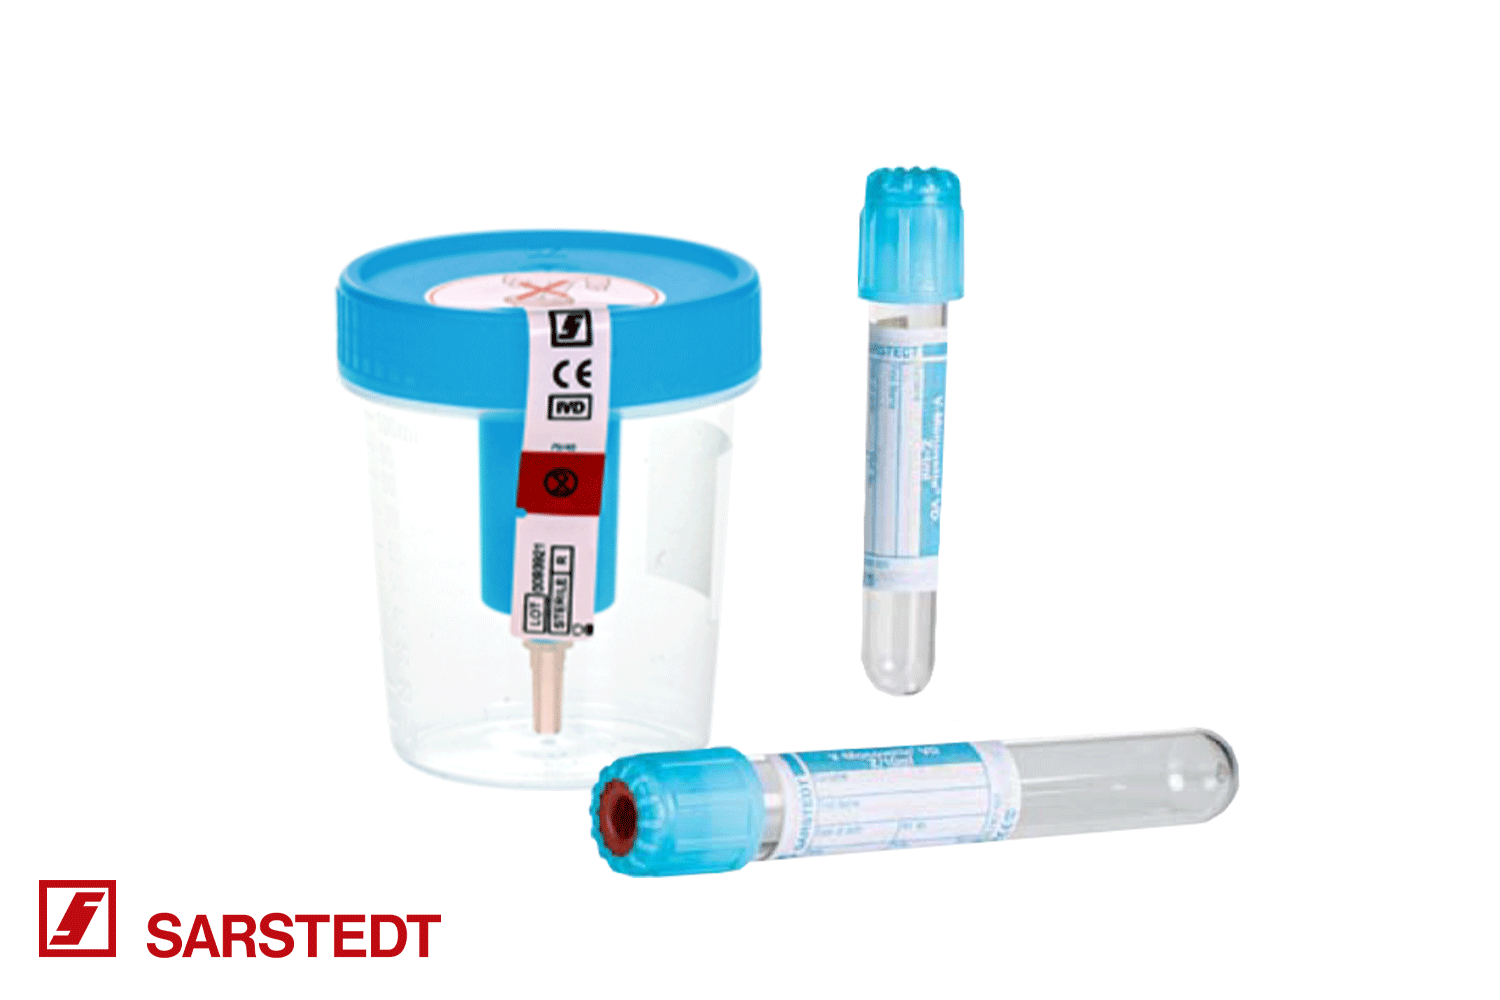 Becher VD mit Sicherungsetikett und Transfereinheit, daneben zwei V-Monovette® VD zur Virus-Diagnostik mit hellblauem Deckel